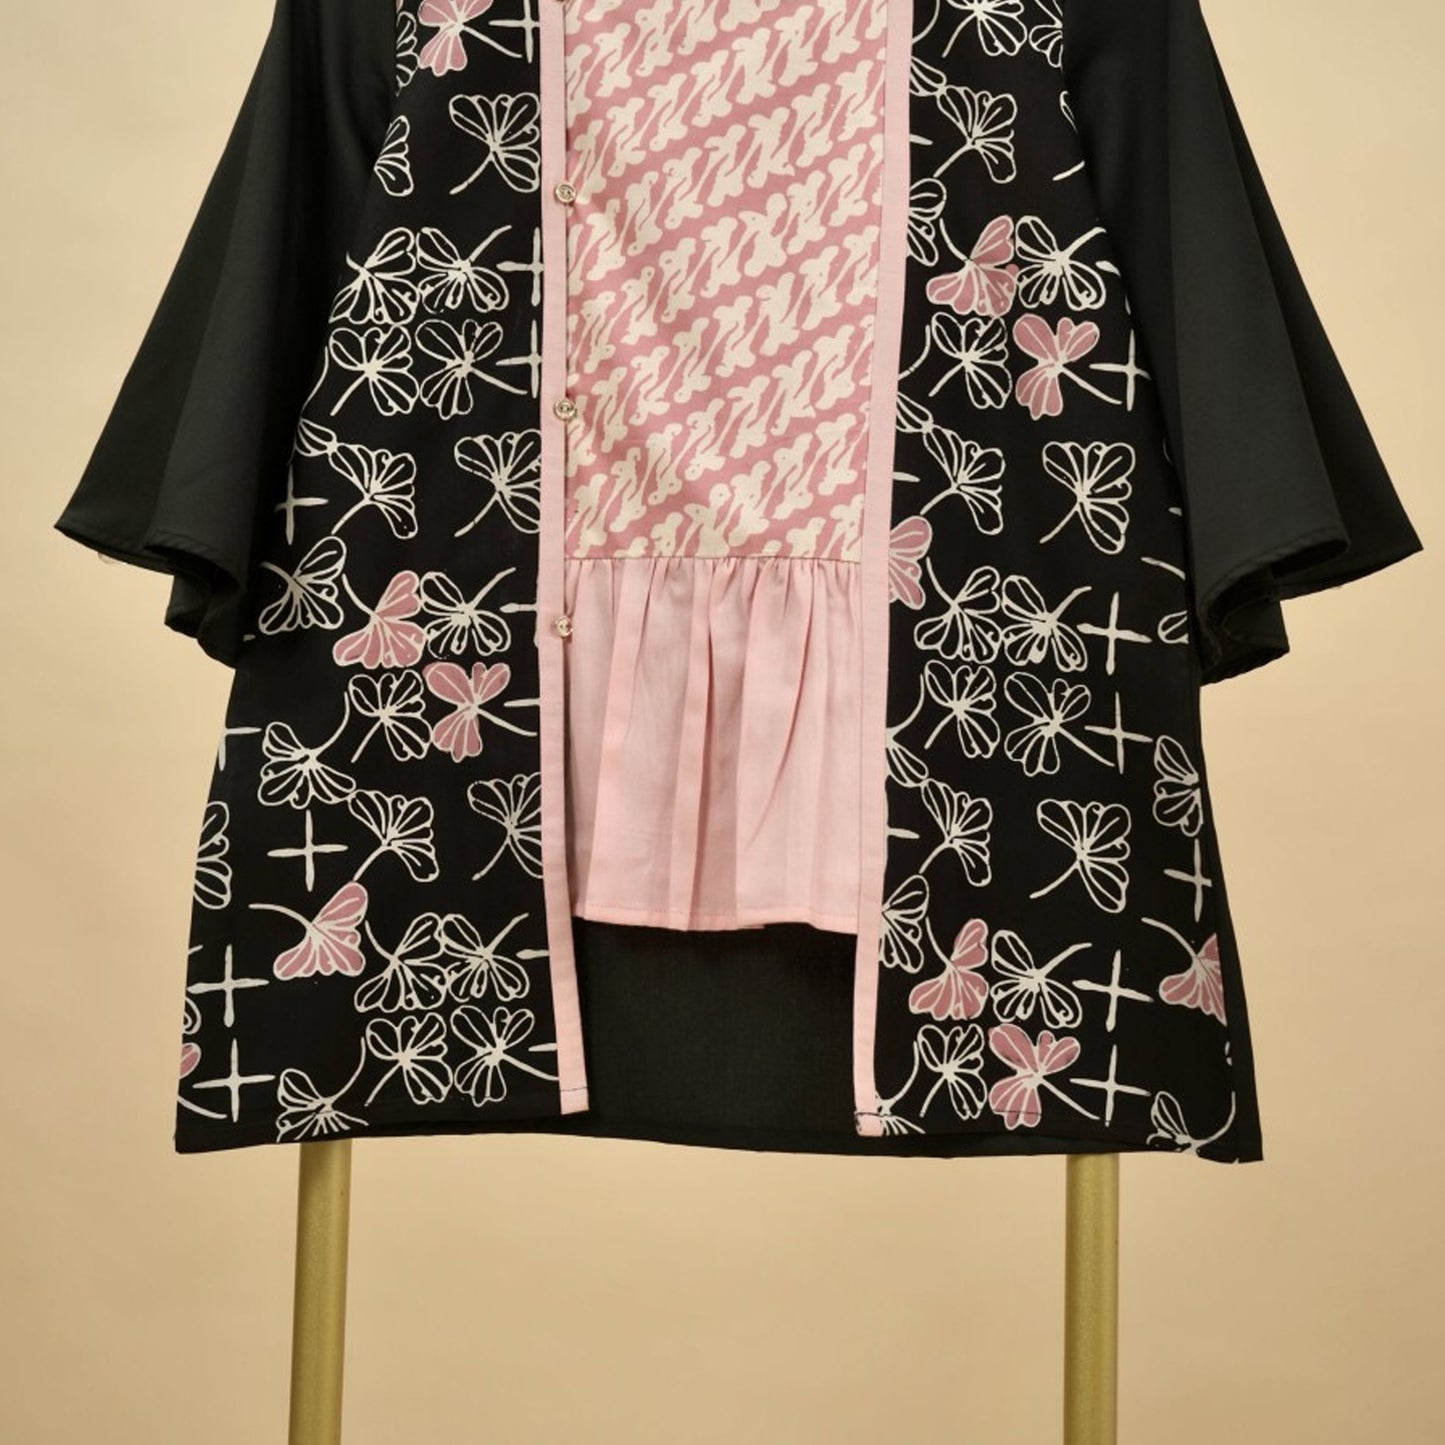 Mode met traditie: Batik-tops voor een stijlvol statement, damesblouse, batikblouse, blouse voor dames, etnische jurk, formeel damesshirt